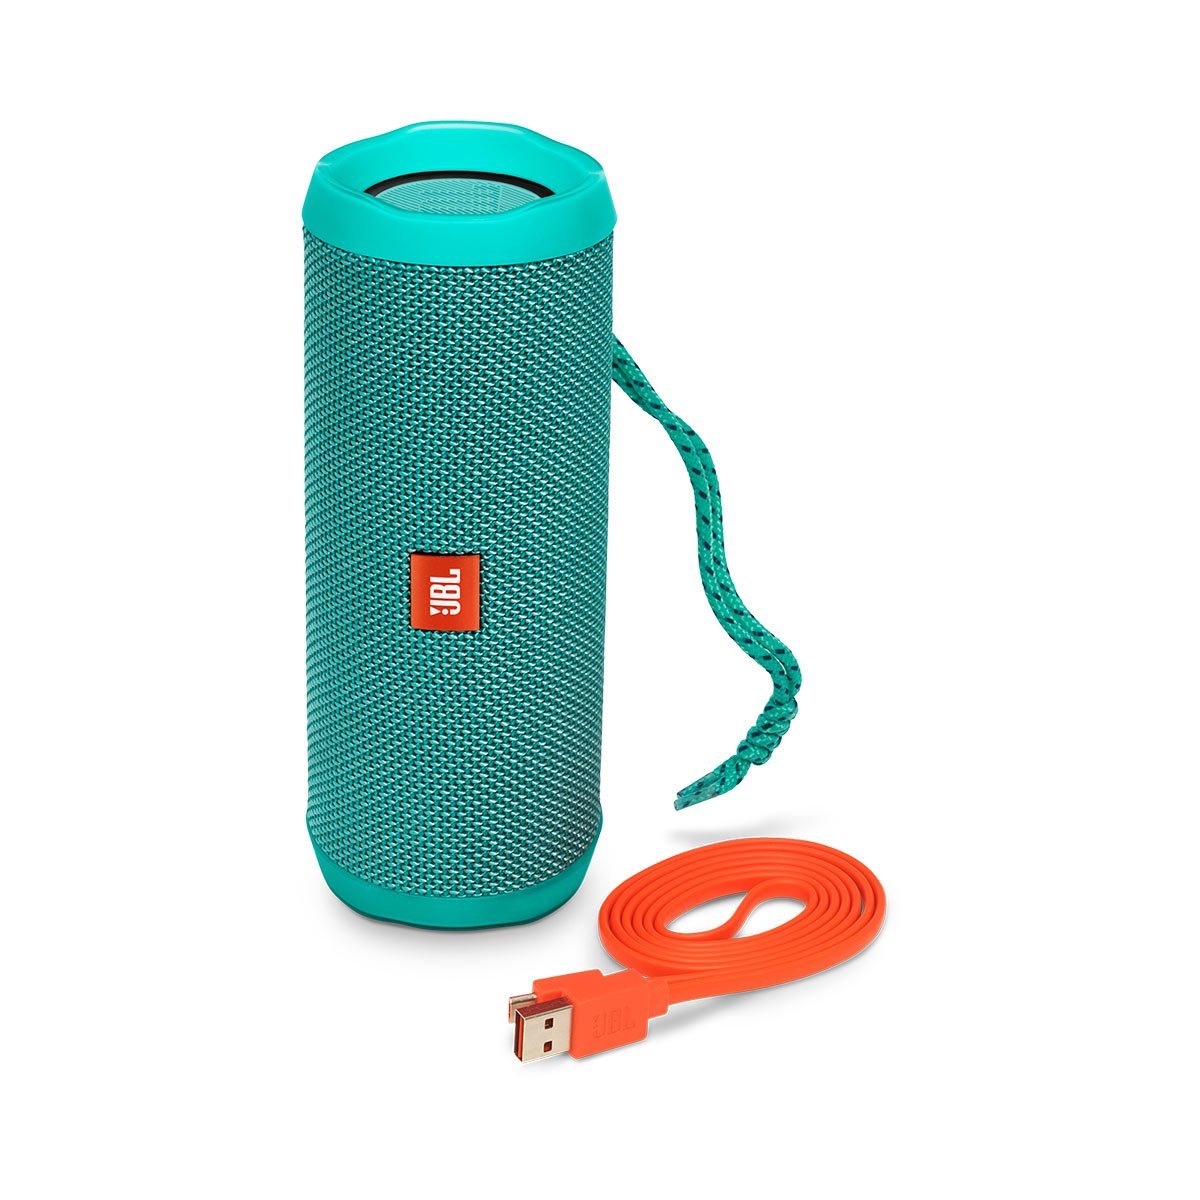 JBL Flip 4 Waterproof Portable Bluetooth Speaker - Teal Price in